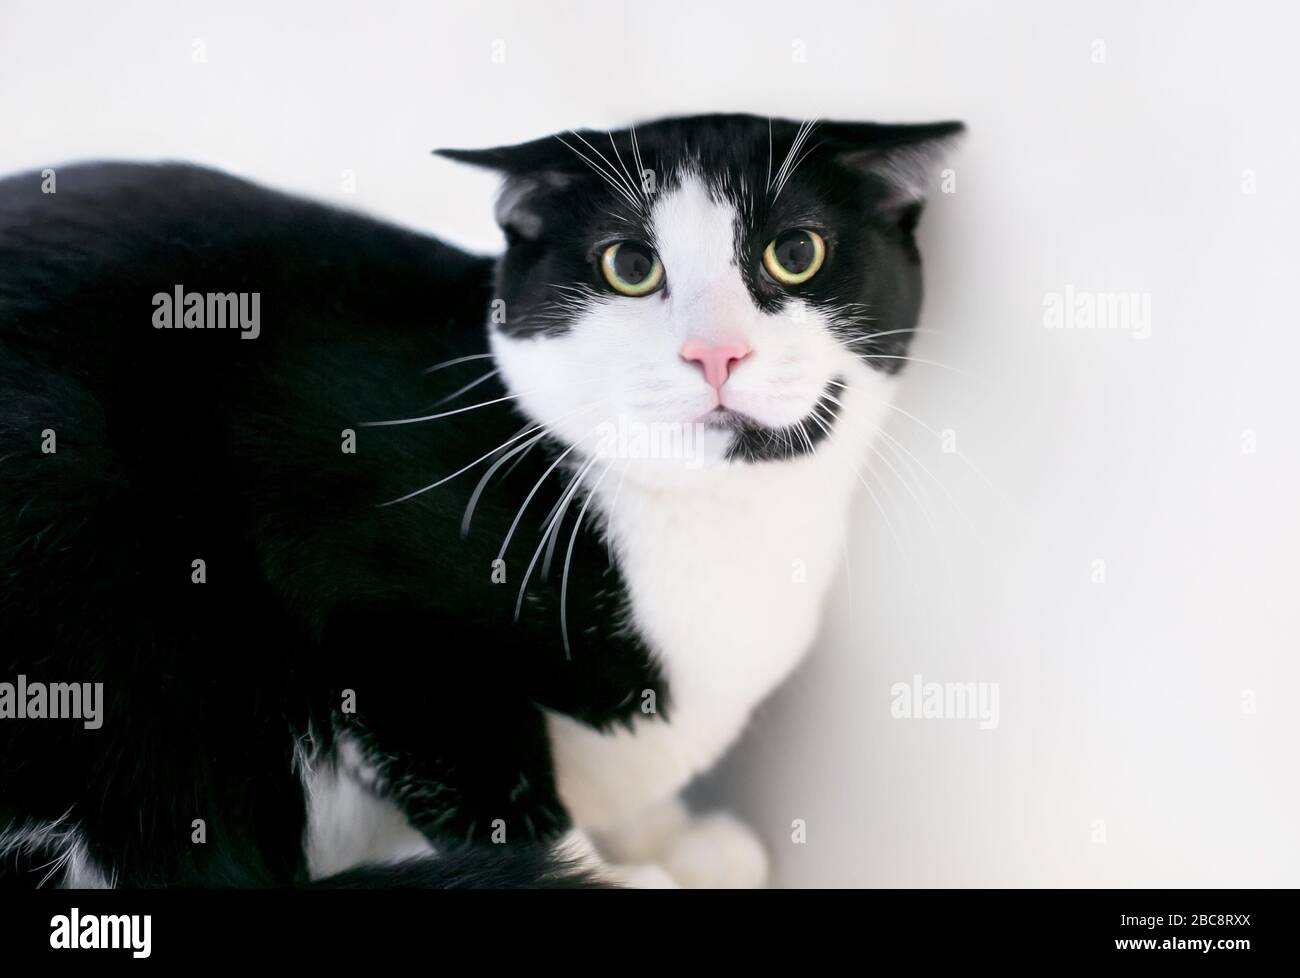 Un gatto Tuxedo nero e bianco infelice con un'espressione spaventata, pupille dilatate e orecchie tenute piatte Foto Stock